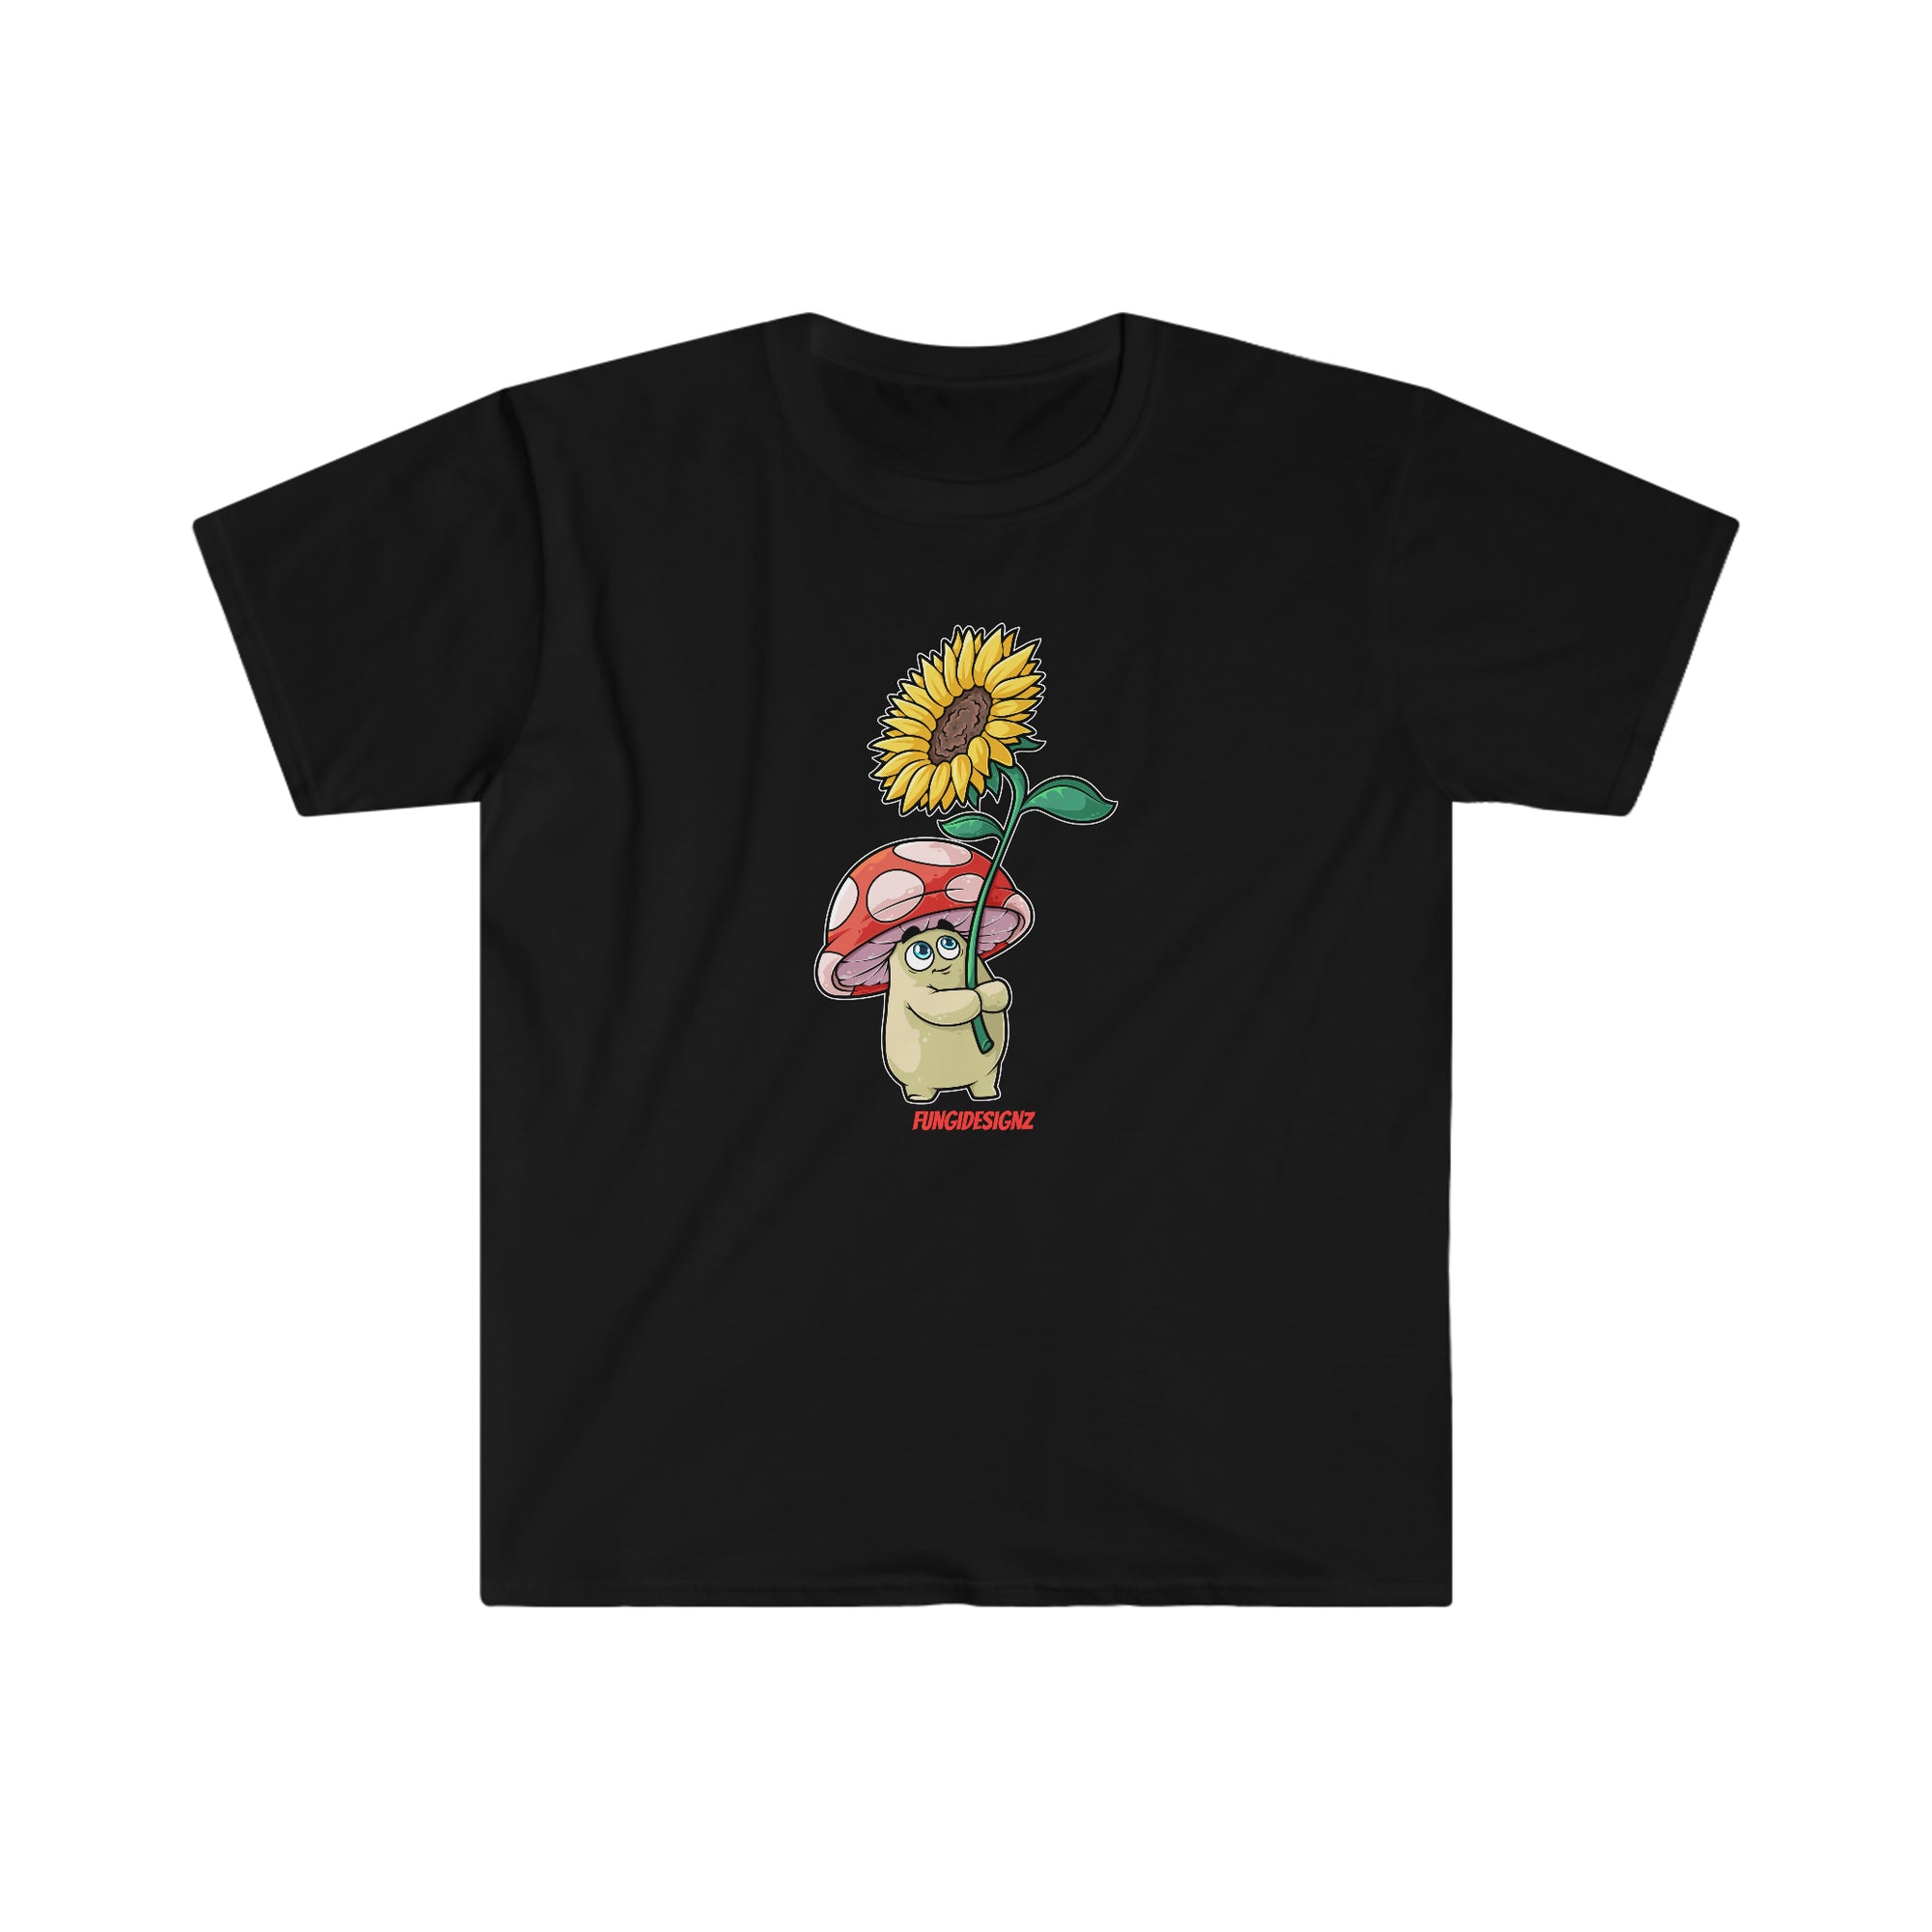 Myco The Amanita - Mushroom T-Shirt